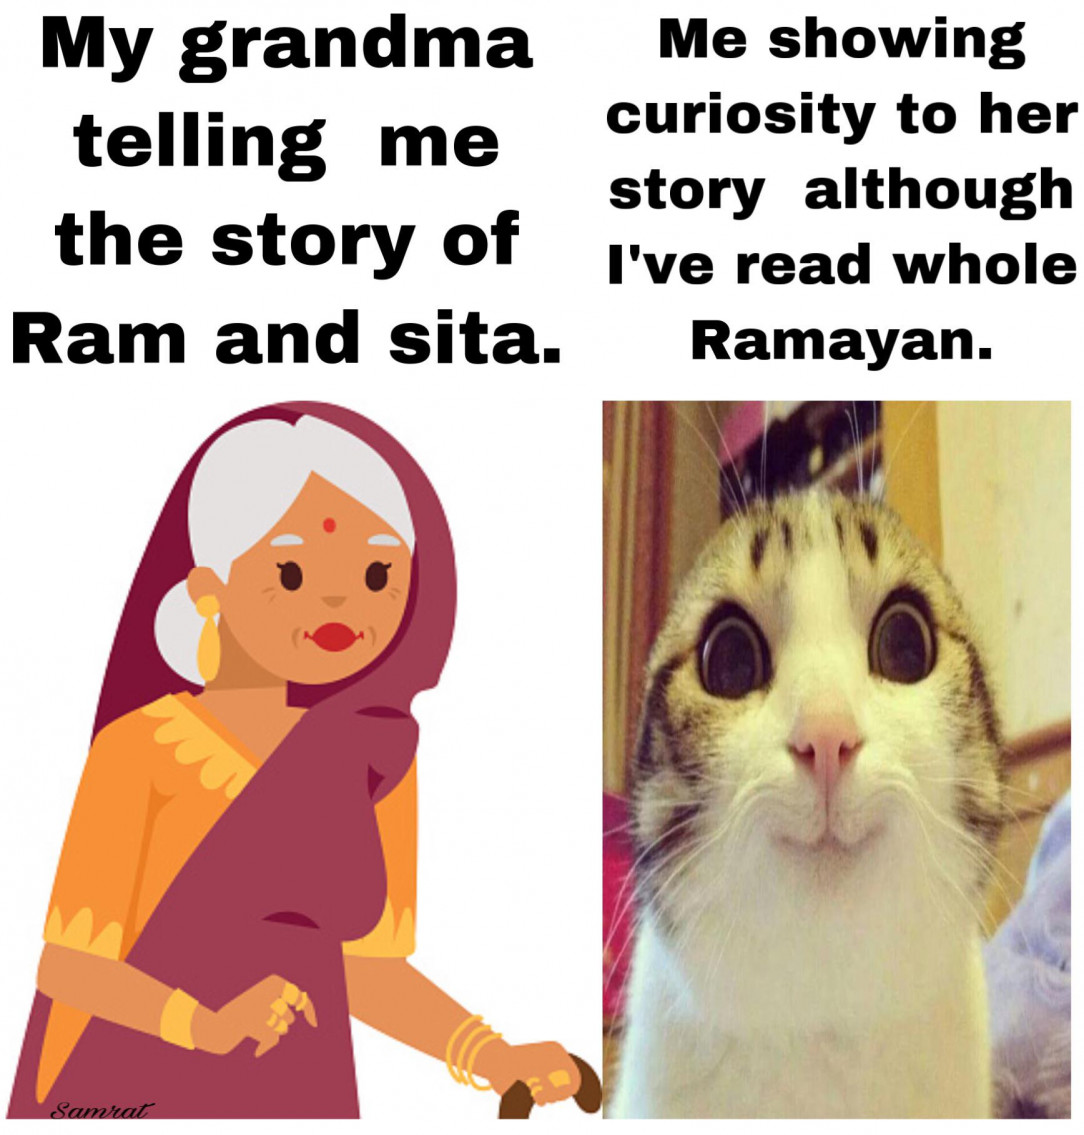 Ramayan= Holy book of hindu